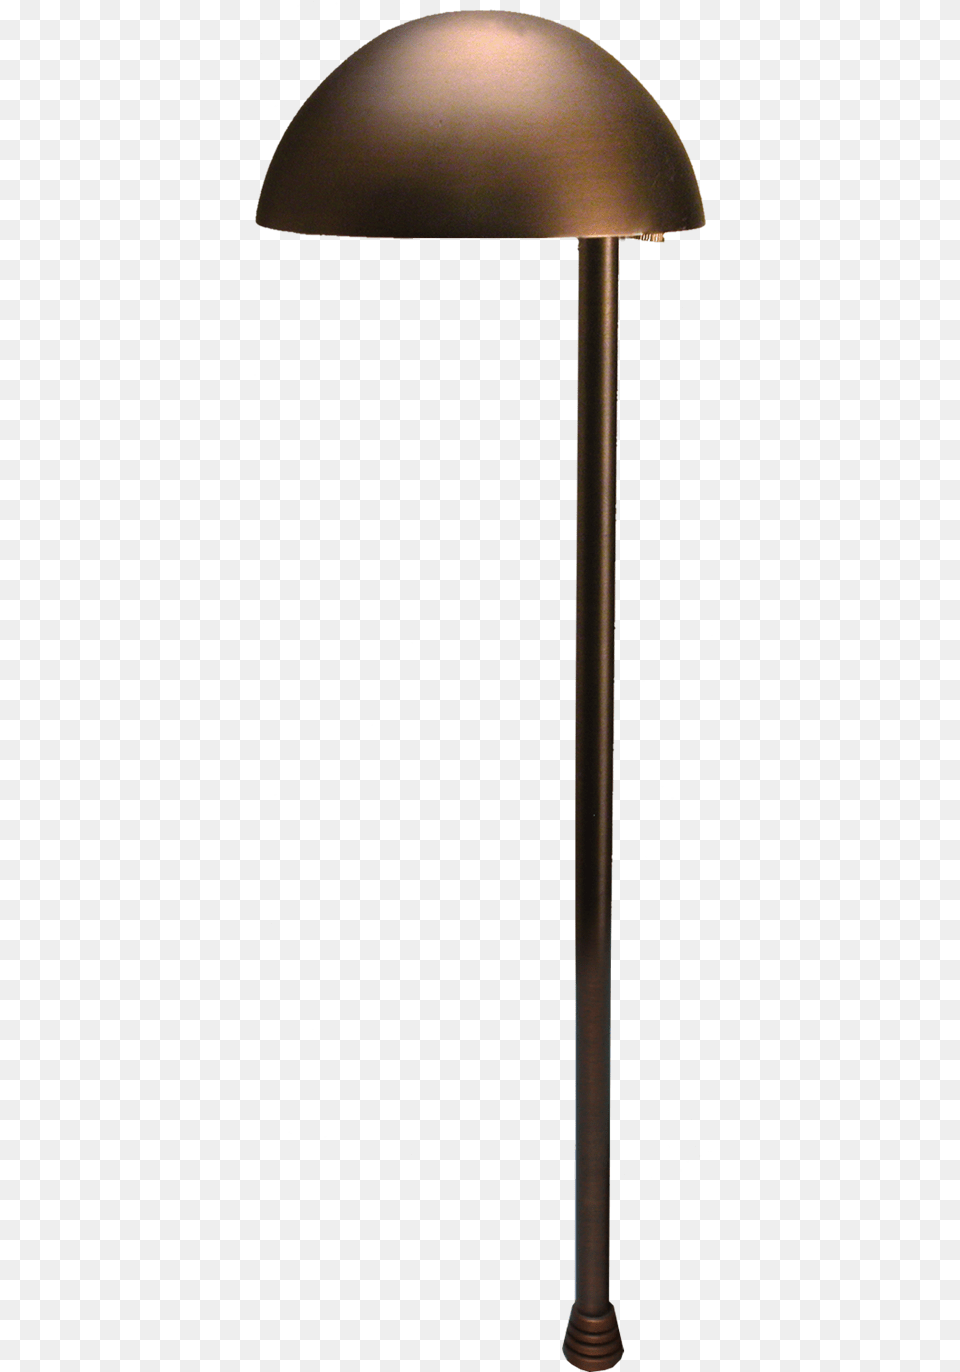 Unique Lighting Venus Lamp, Lampshade Free Transparent Png